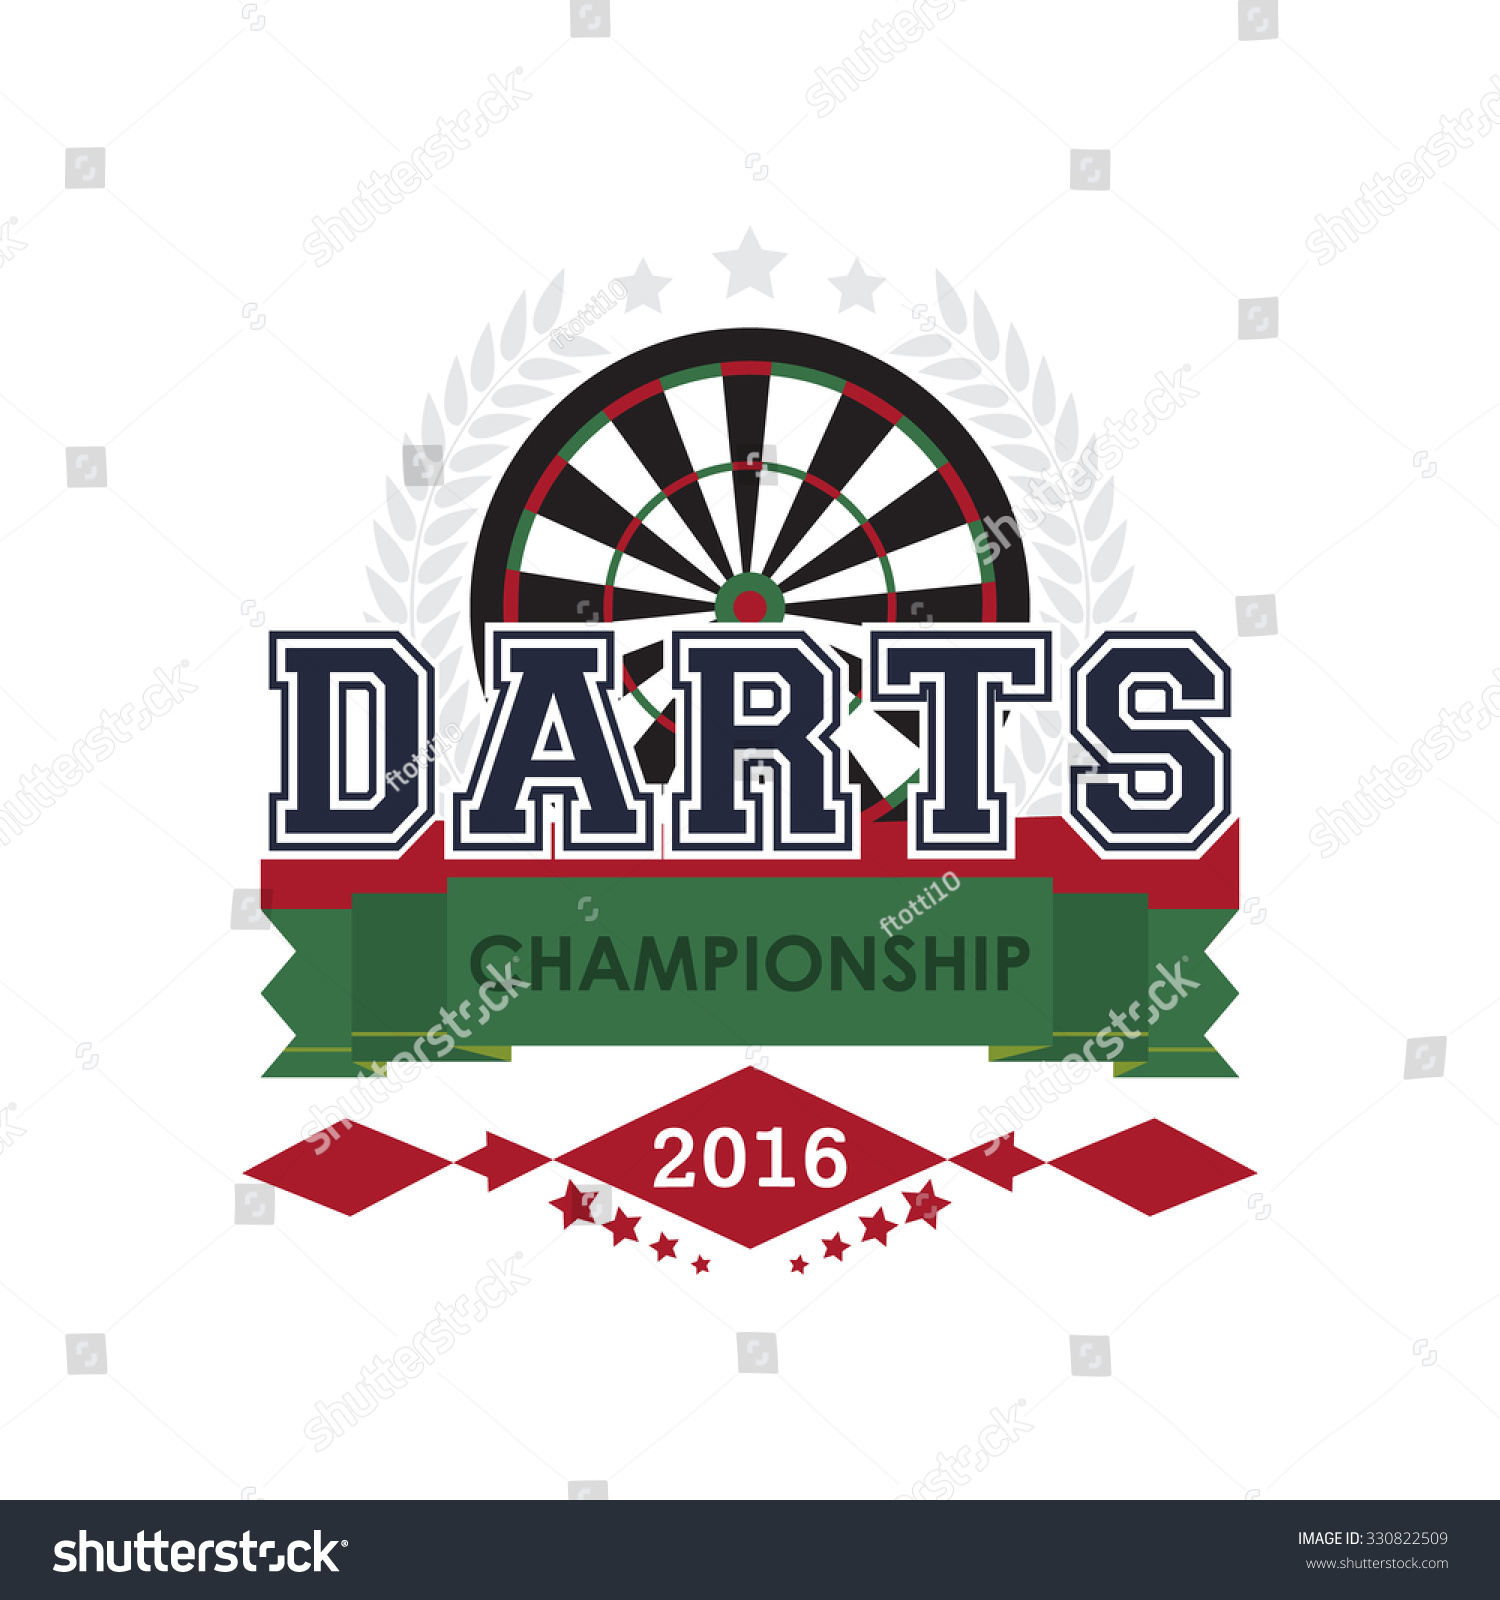 Darts Championship Emblem Vector Design Your Stock Vector 330822509 ...